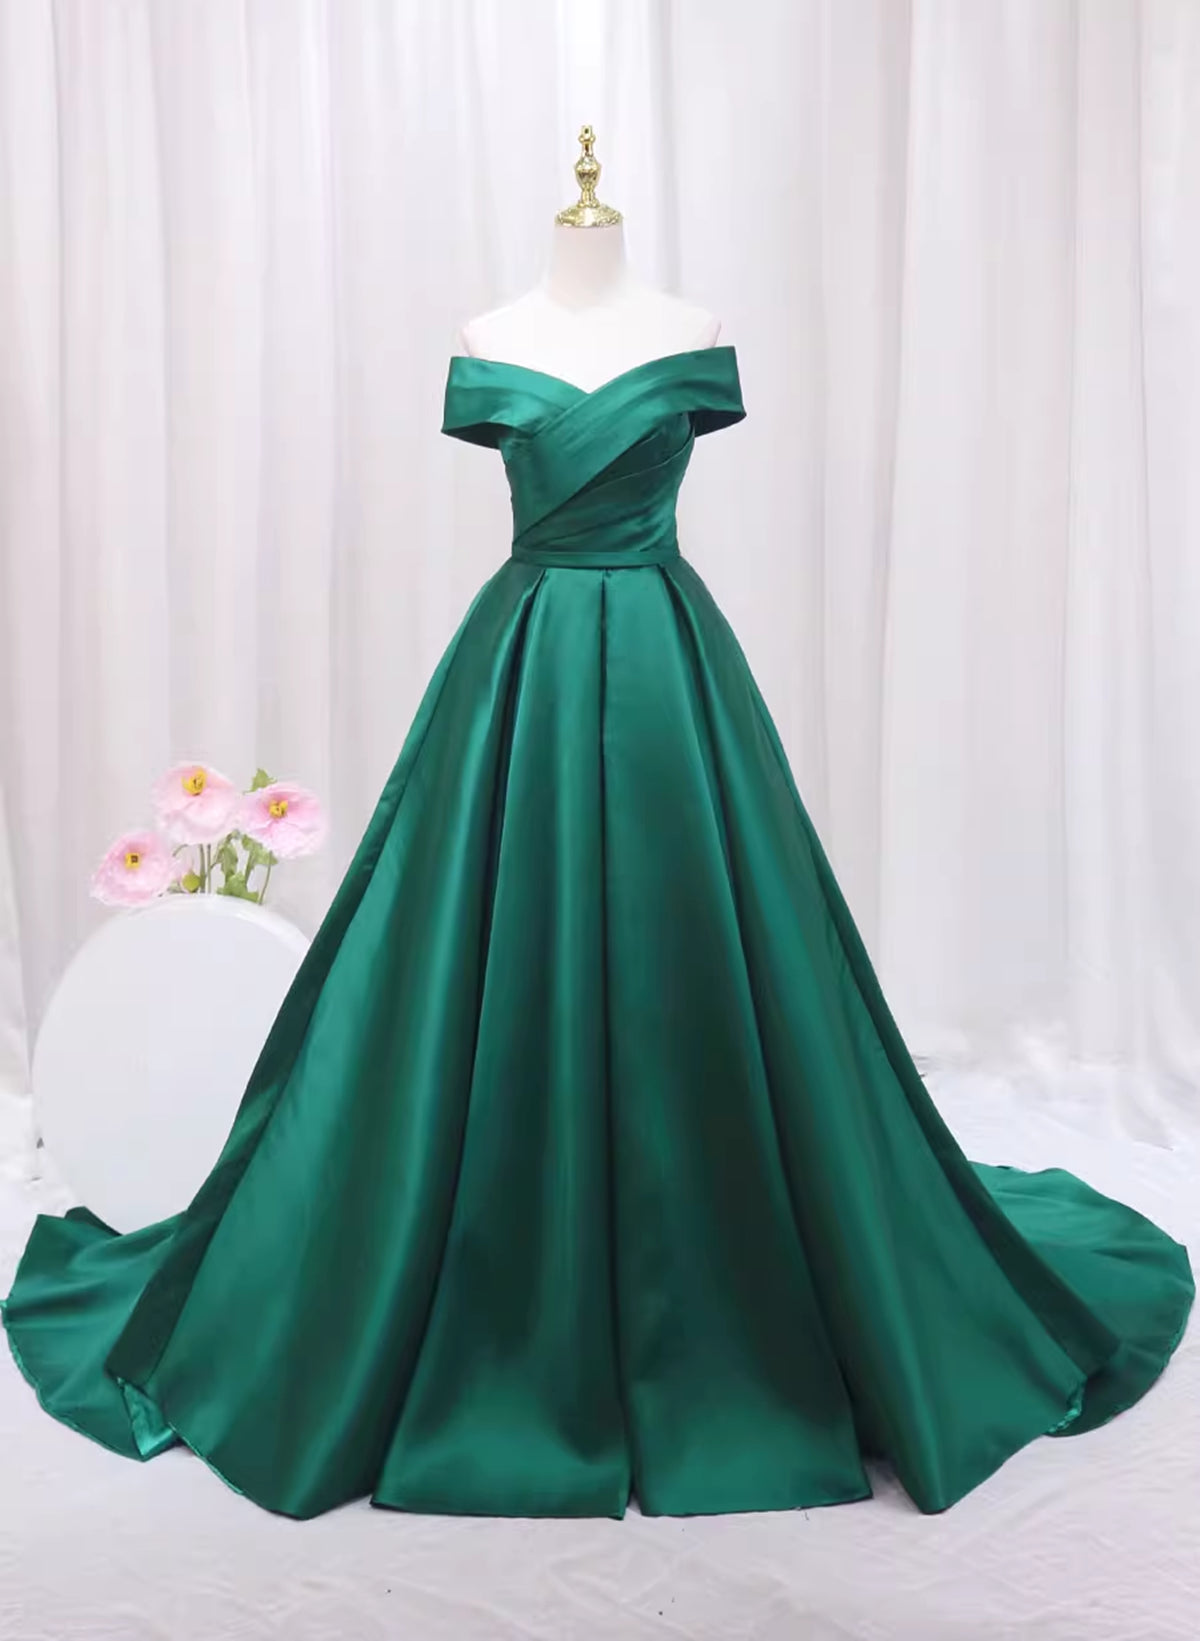 A-line Green Satin Sweetheart Corset Formal Dress, Green Long Evening Dress Corset Prom Dress outfits, Bridesmaids Dresses Fall